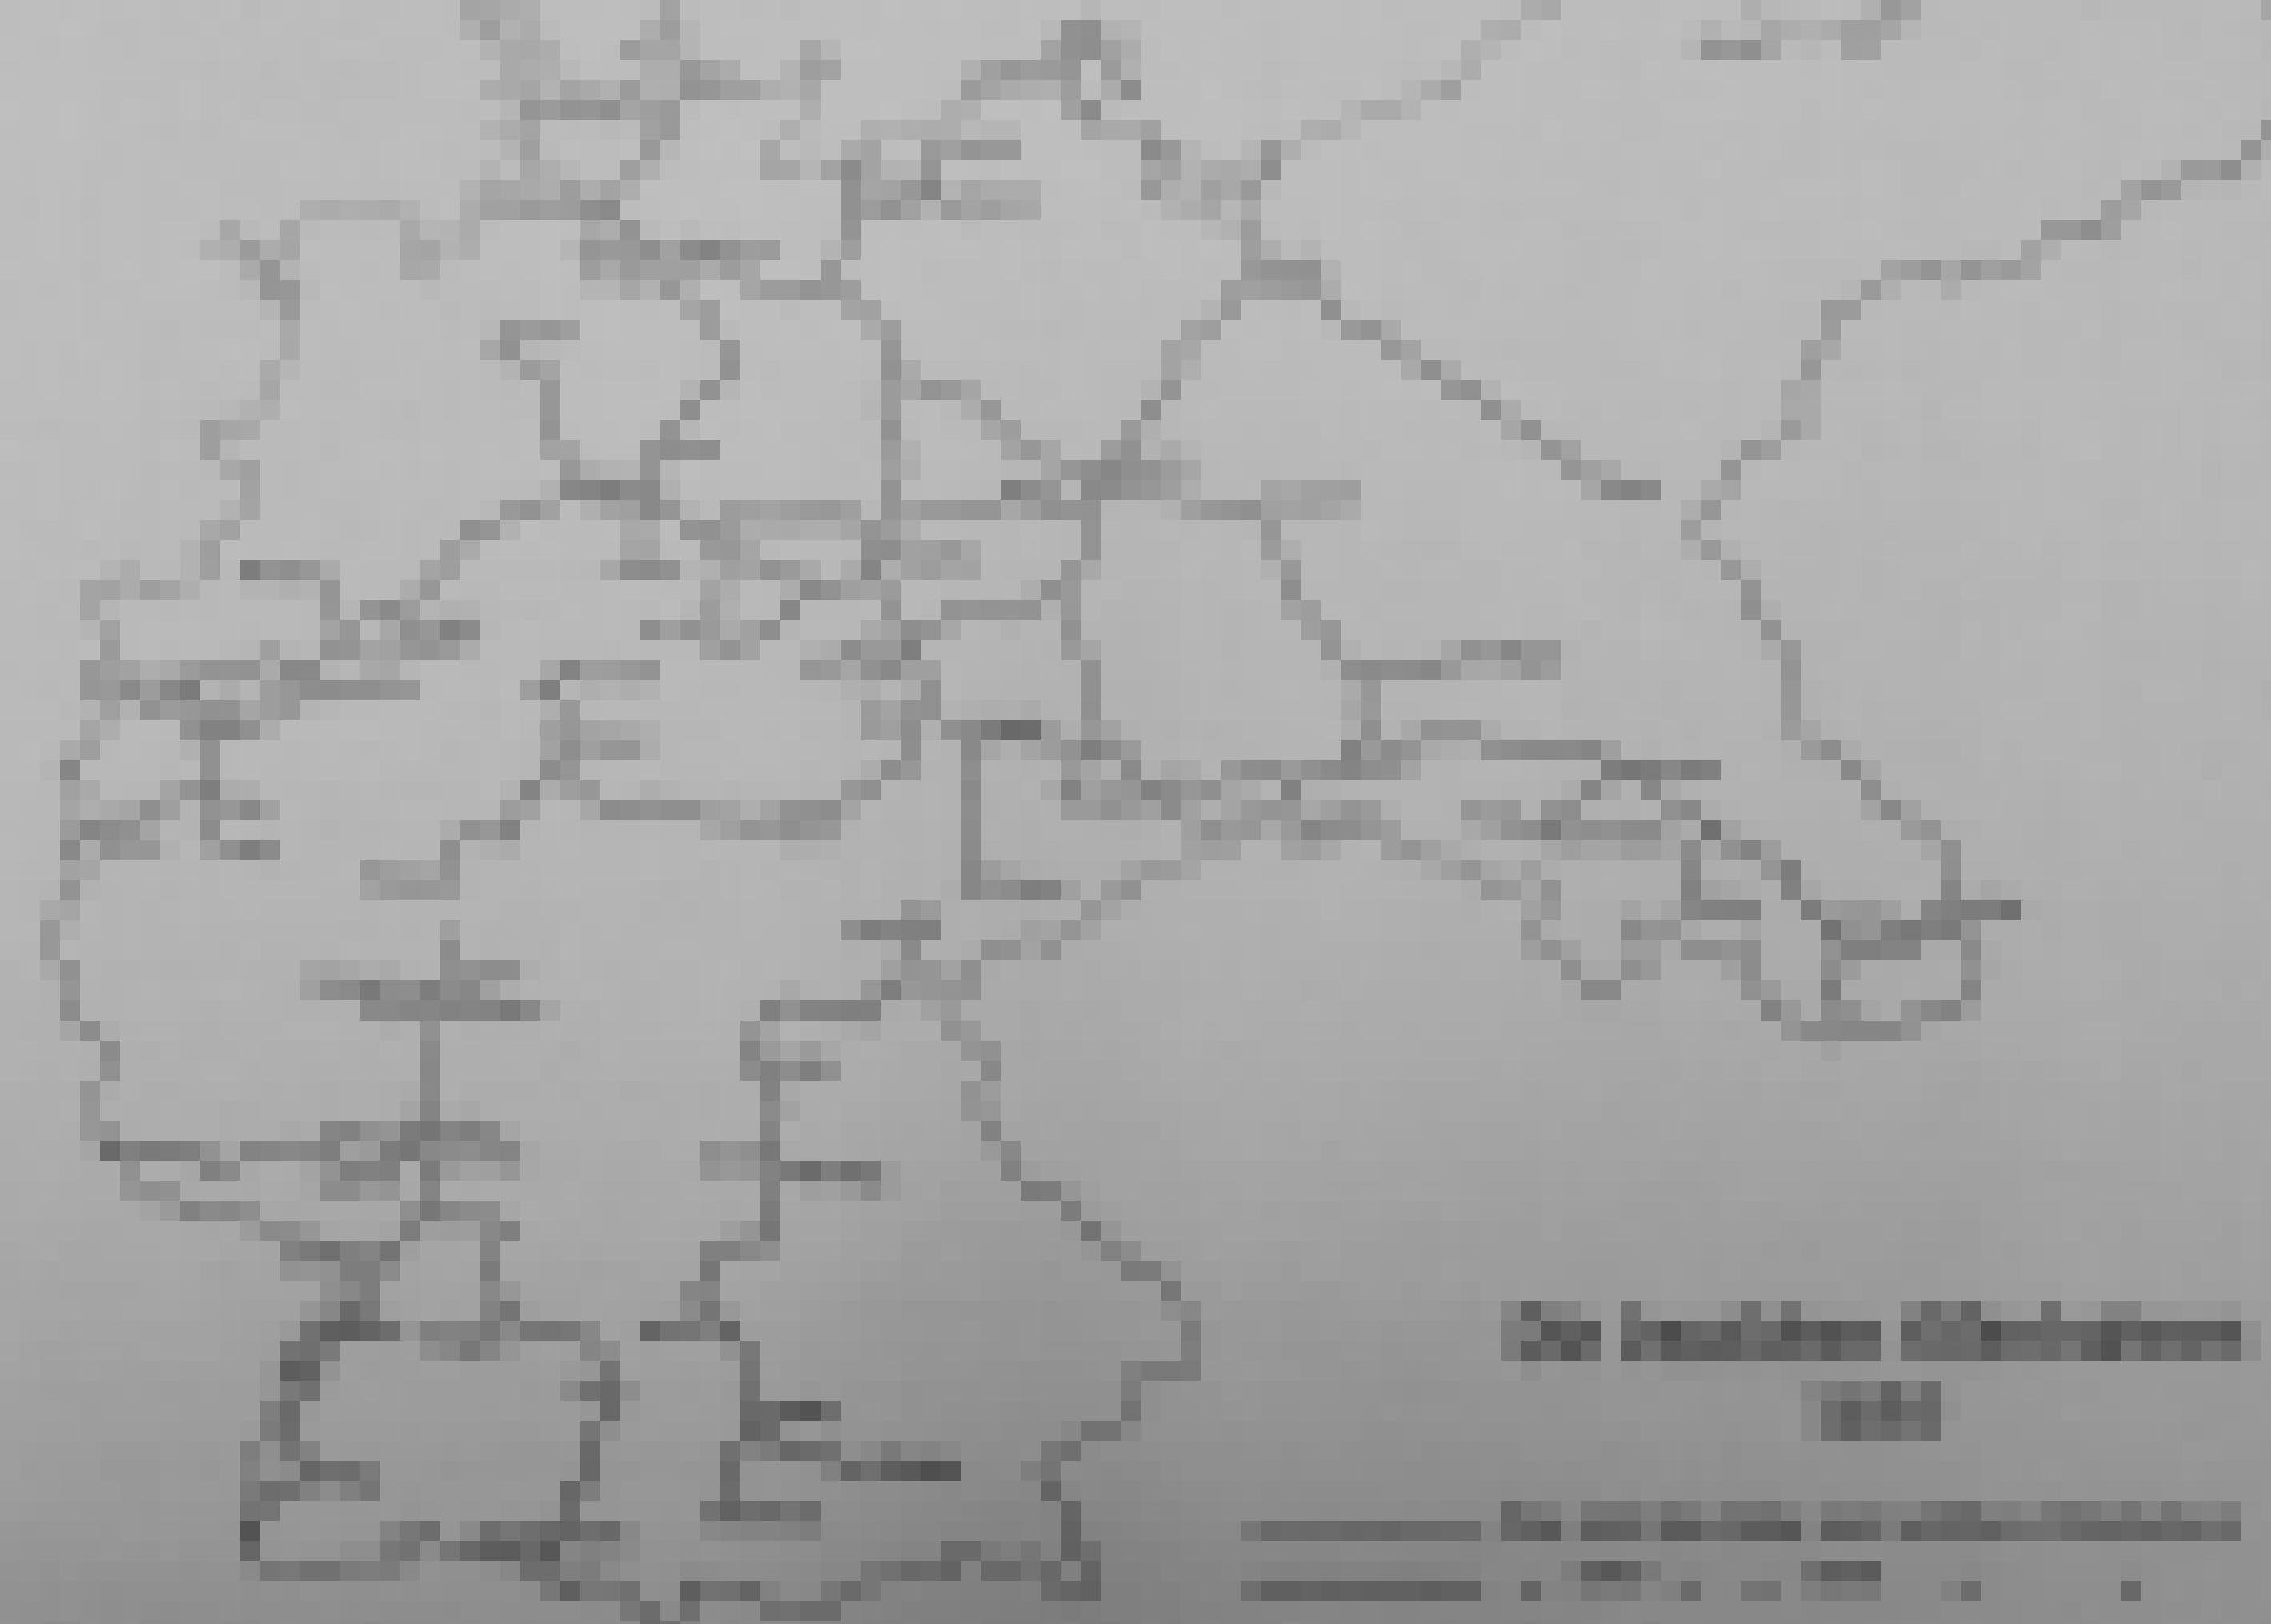 Streckenkarte in Schwarzweiß, beschriftet mit den Worten „Die deutschen Eisenbahnen 1850“.